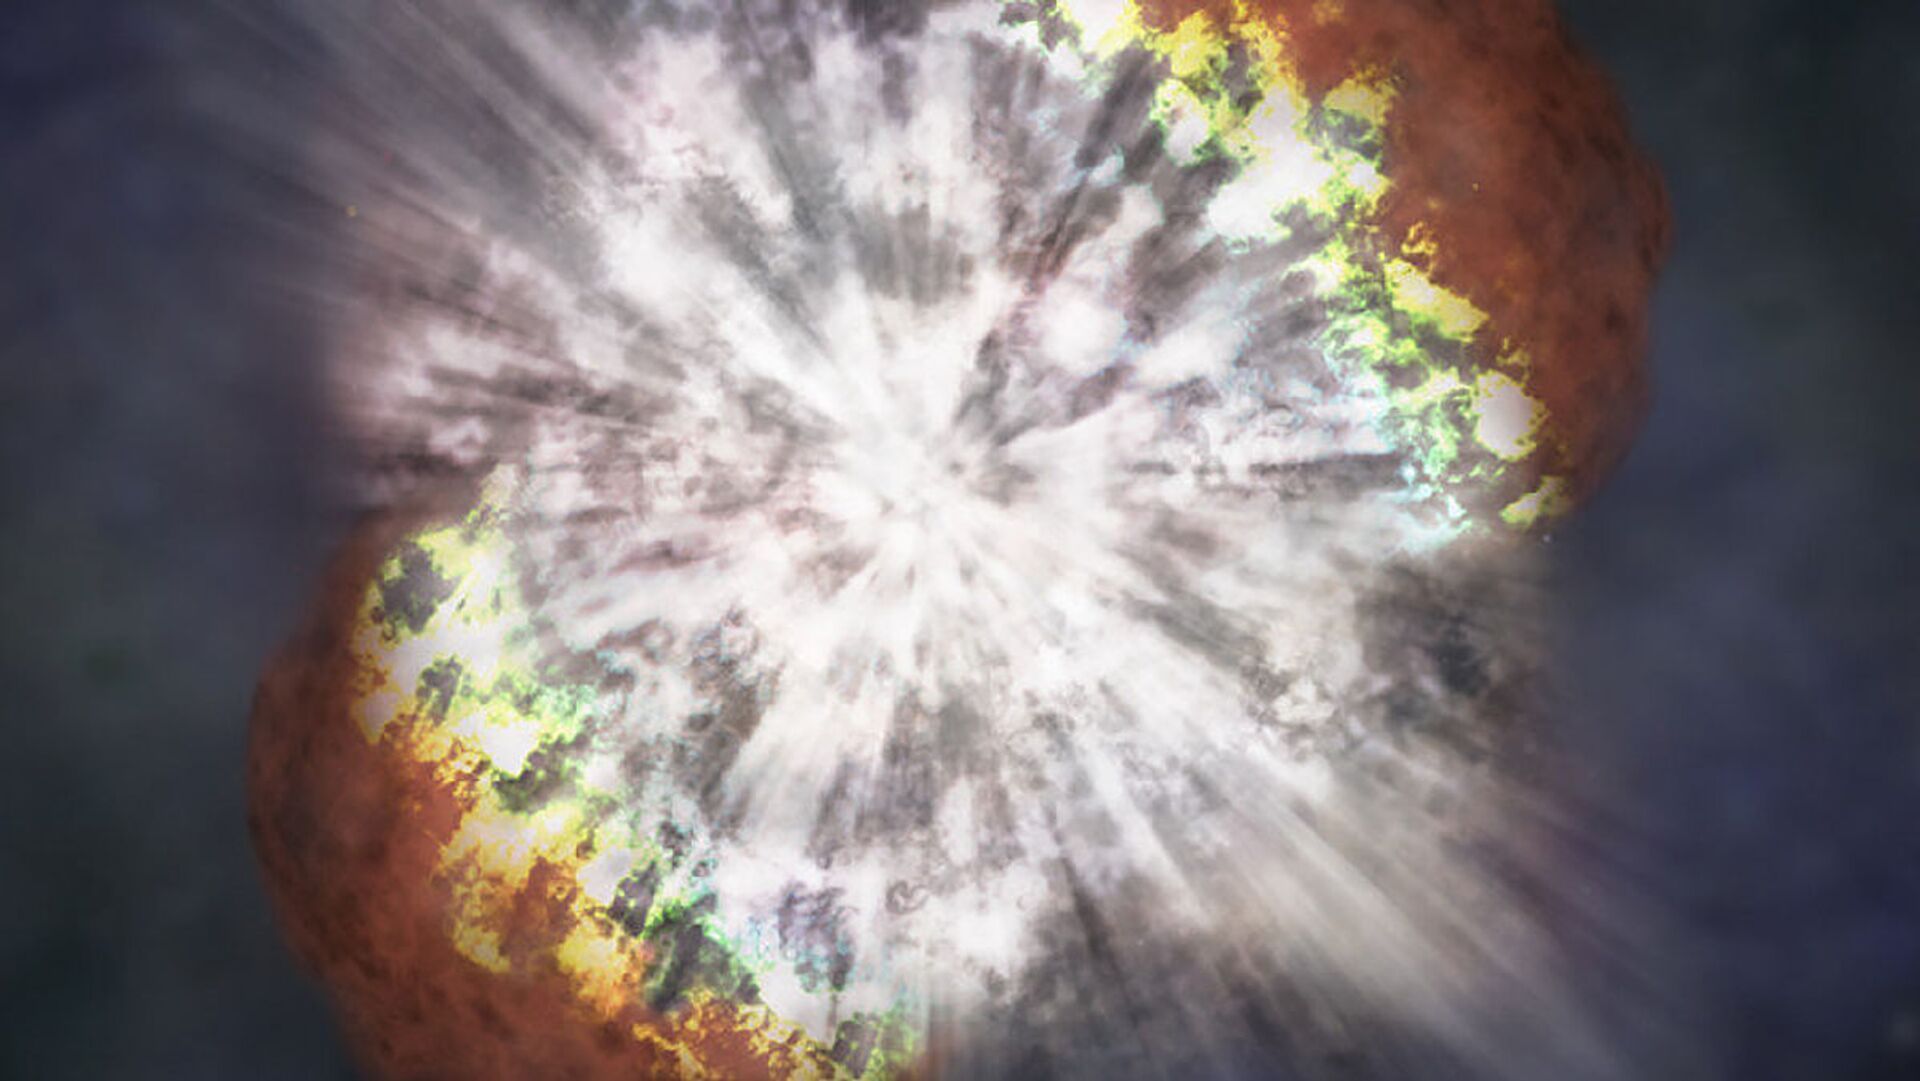 Cientistas registram pela 1ª vez explosão de supernova em detalhes nunca antes vistos (FOTO)  - Sputnik Brasil, 1920, 06.08.2021